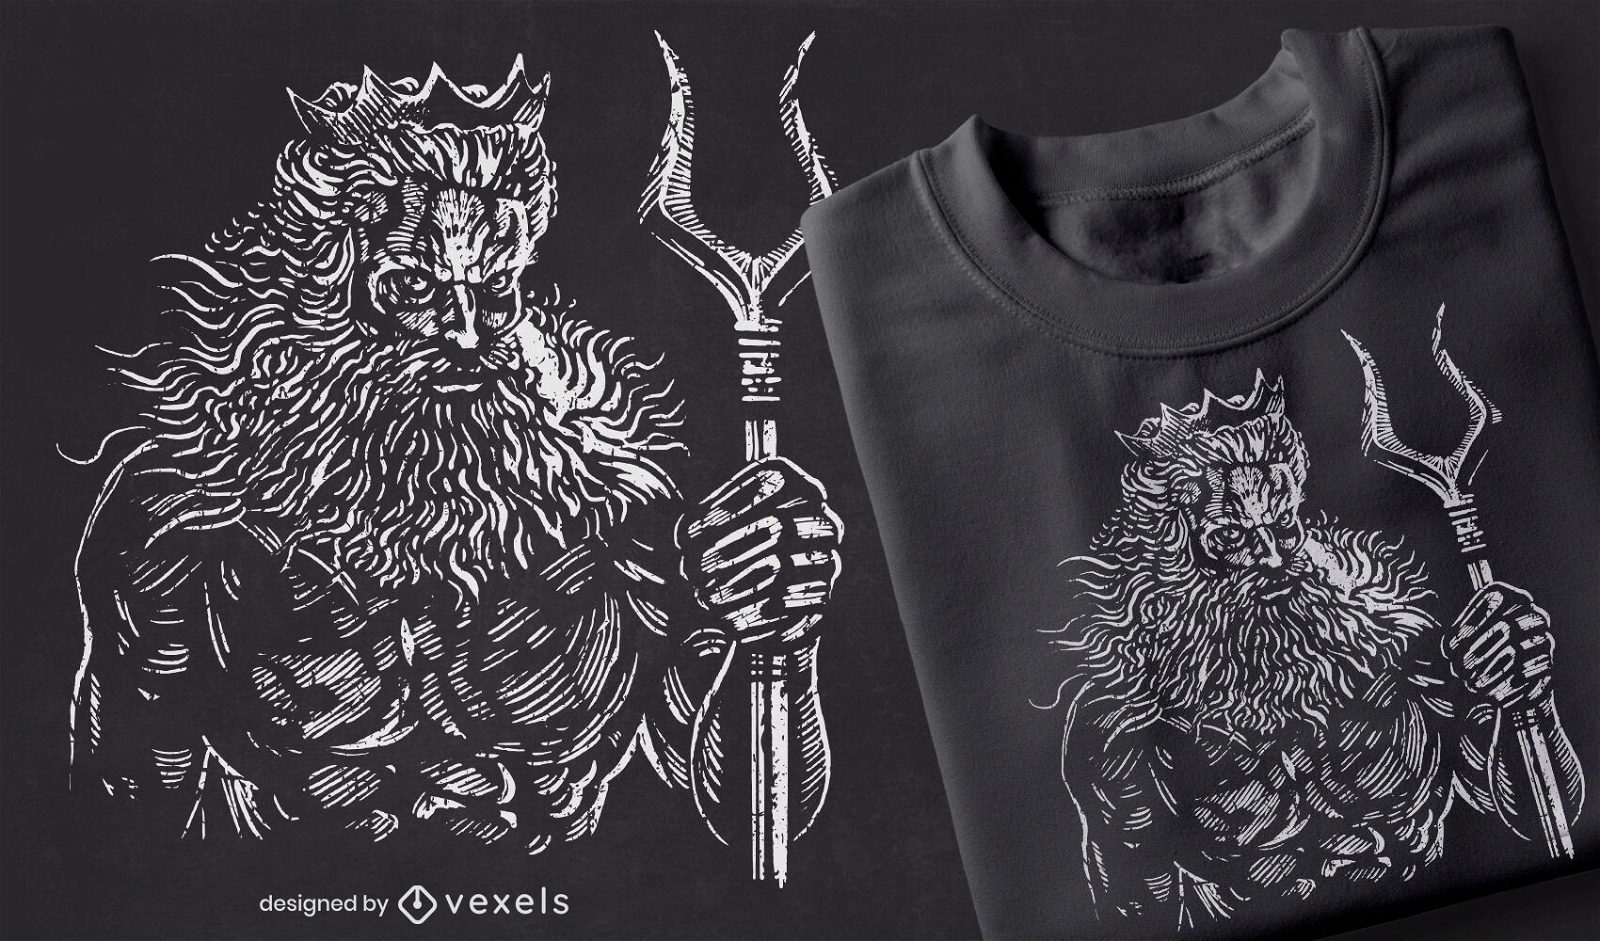 Hades handgezeichnetes T-Shirt Design